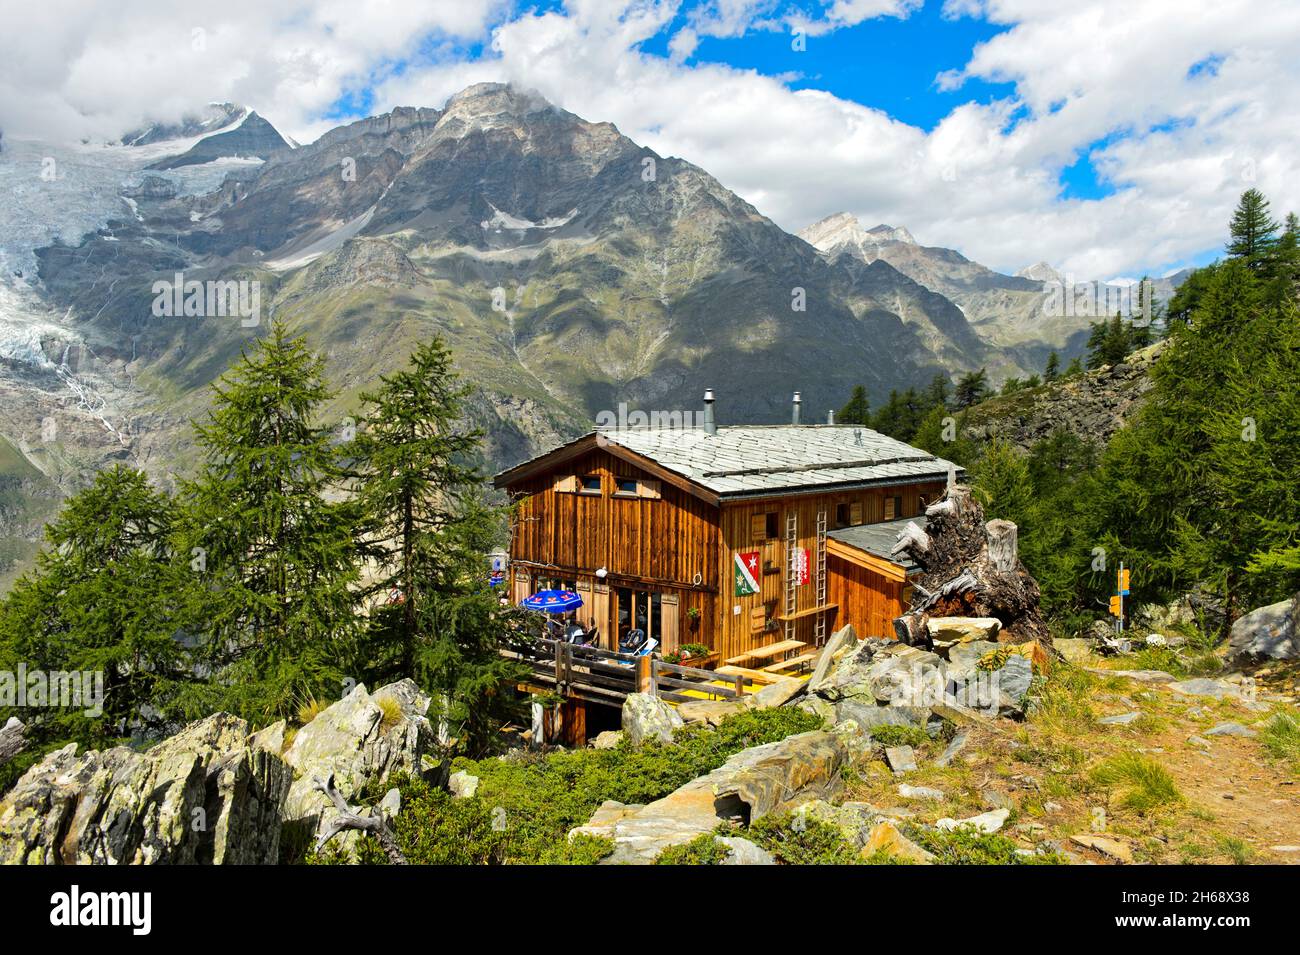 Refuge de montagne Europahütte sur le sentier de randonnée Europaweg, Randa, Valais, Suisse Banque D'Images